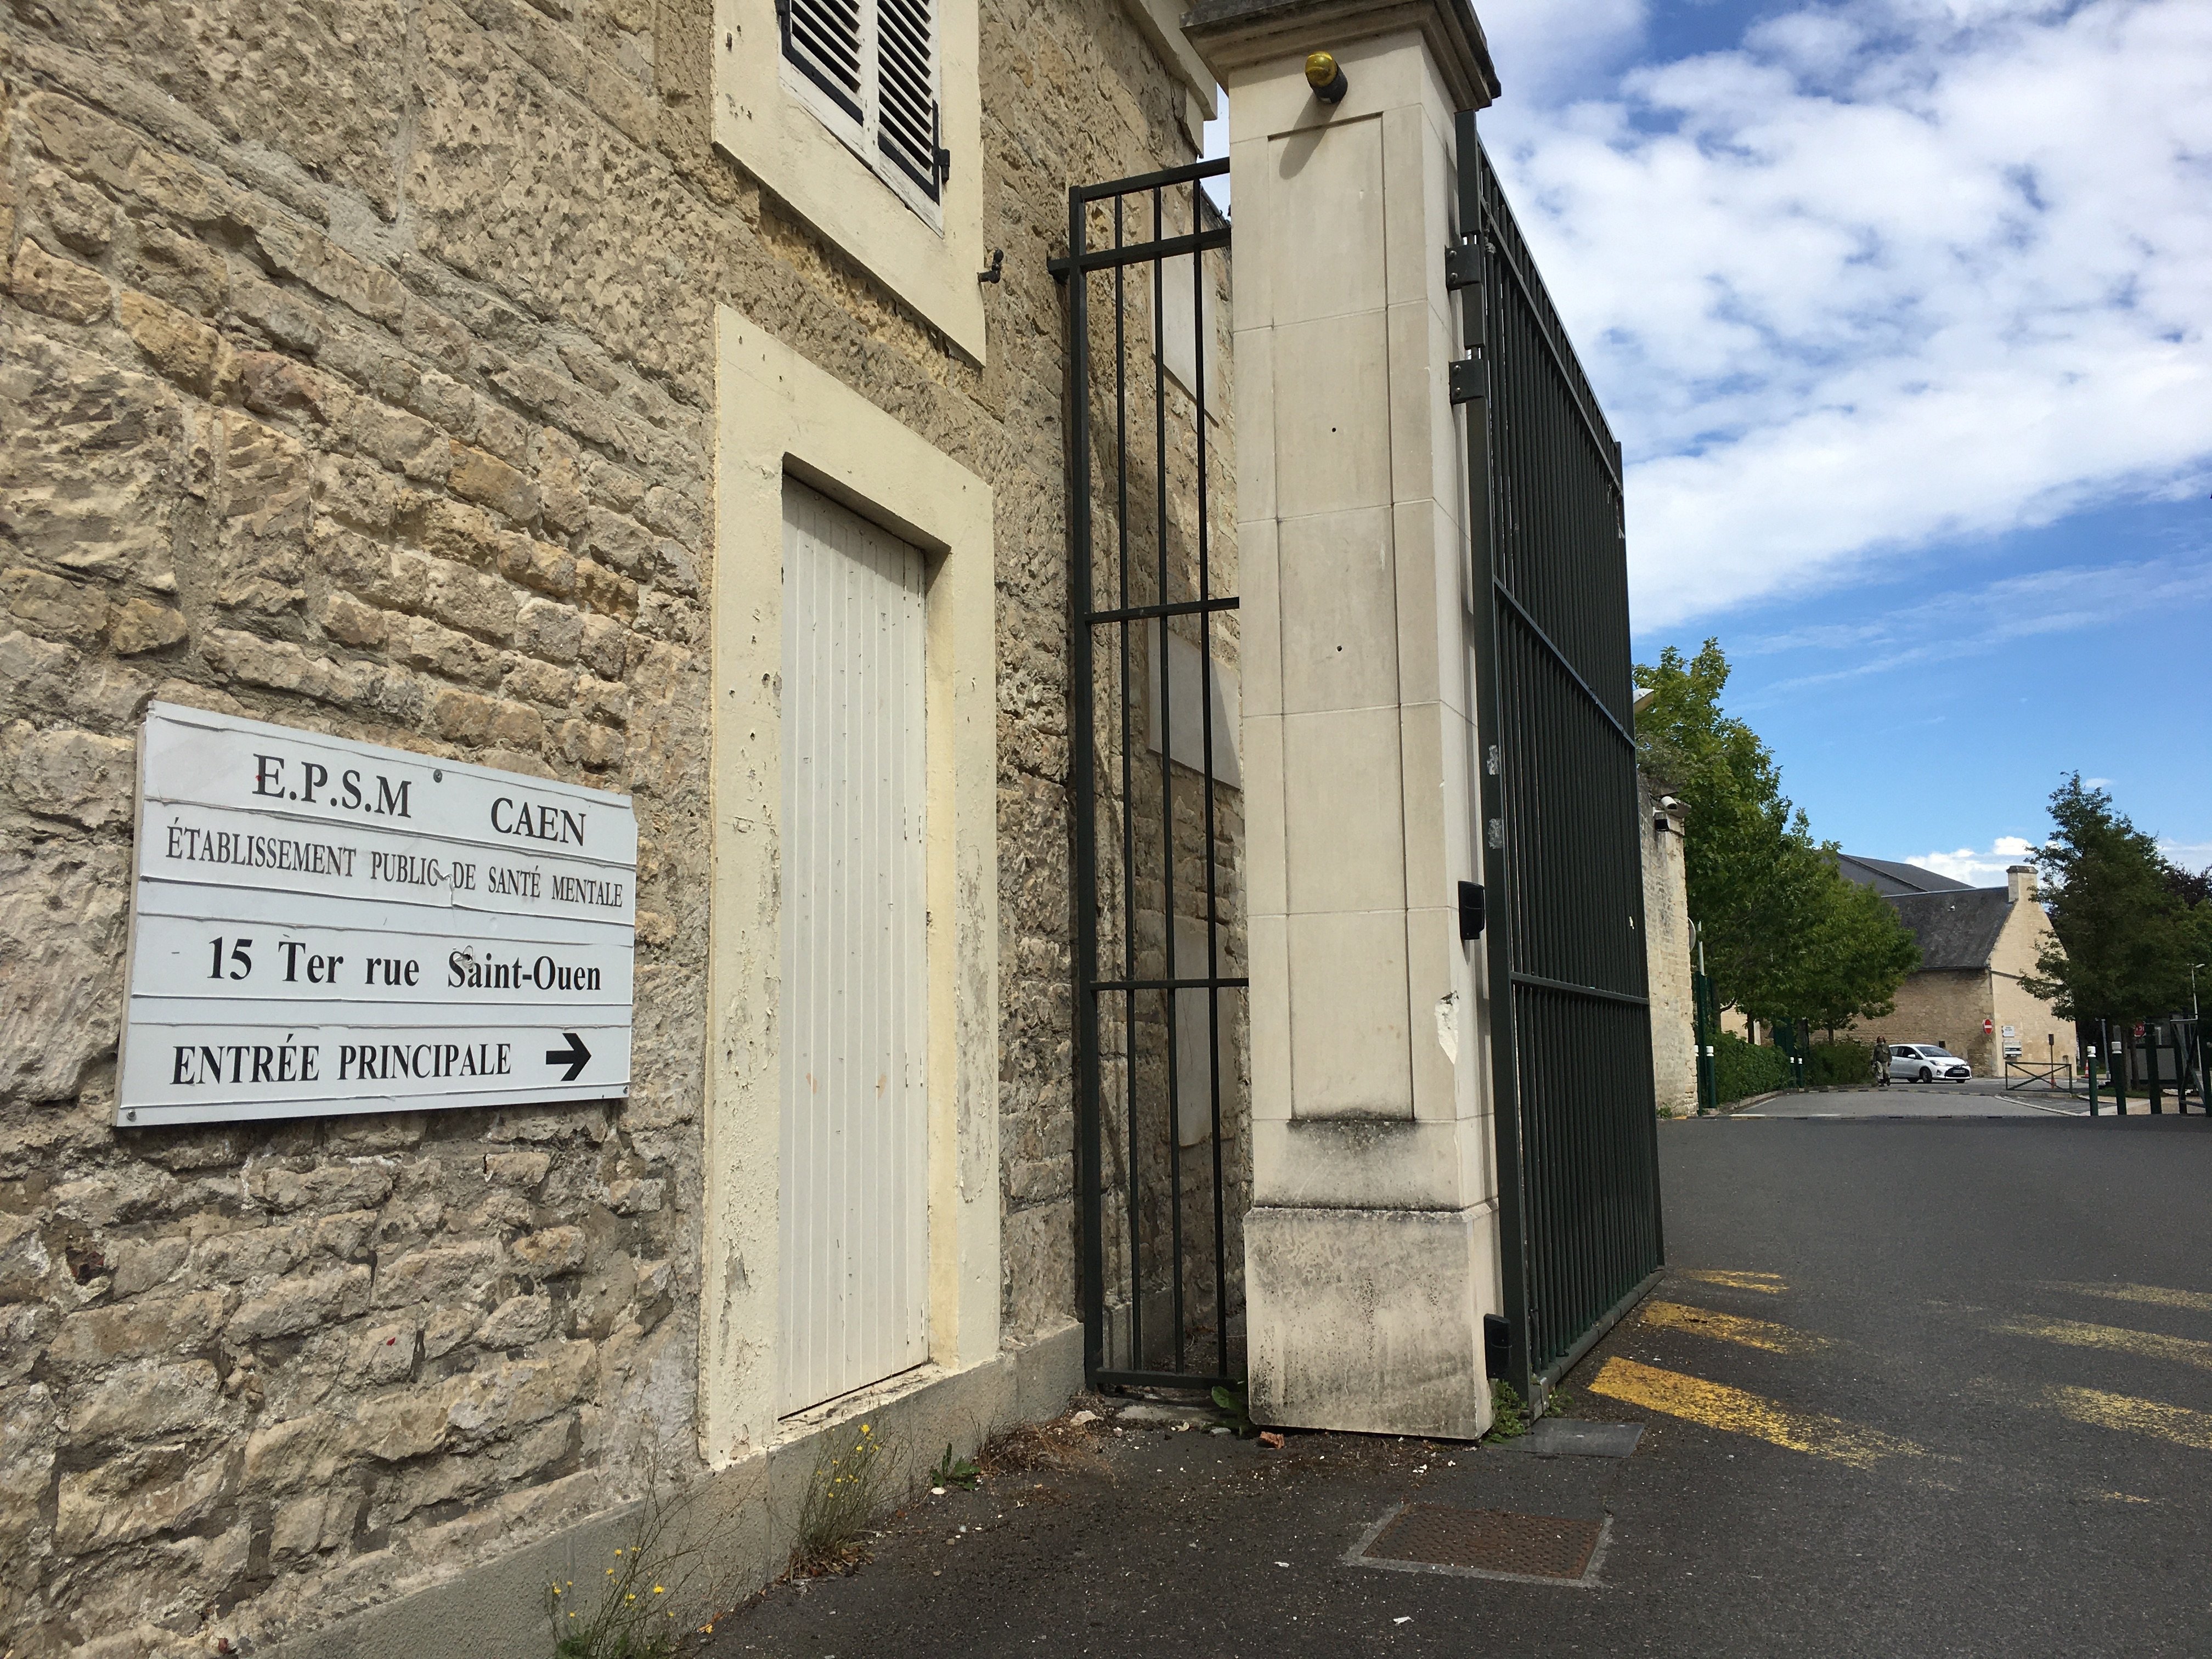 L’établissement public de santé mentale de Caen fait face à une pénurie de médecins, il a donc du fermer ses portes cet été. LP/Esteban Pinel